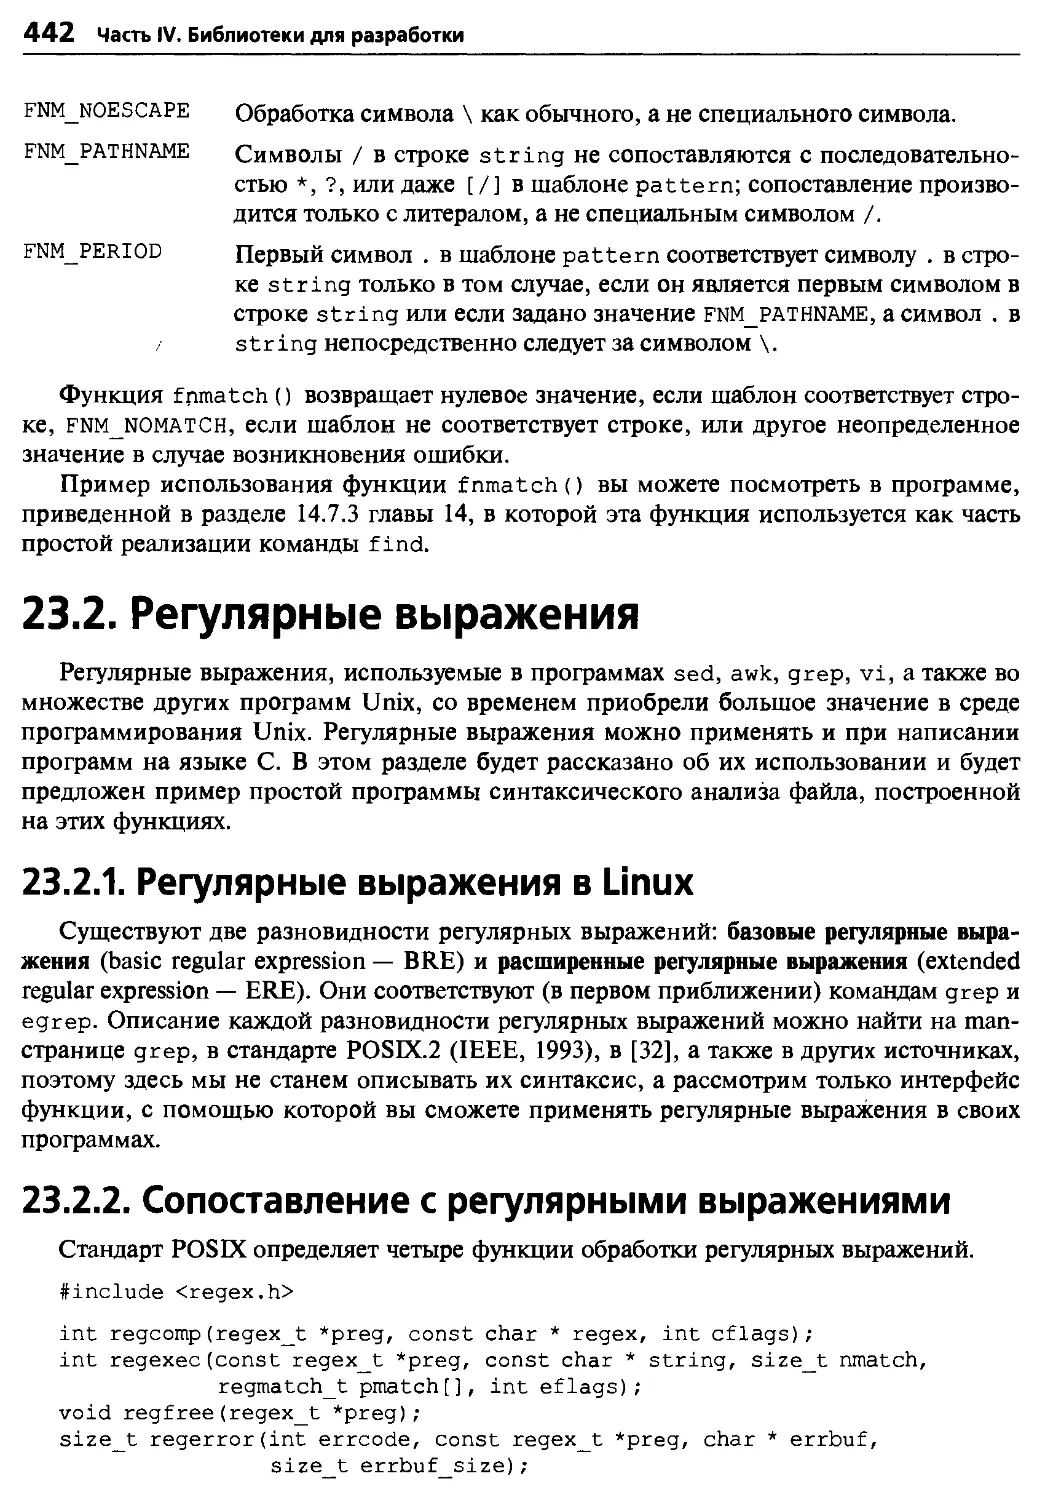 23.2. Регулярные выражения
23.2.1. Регулярные выражения в Linux
23.2.2. Сопоставление с регулярными выражениями